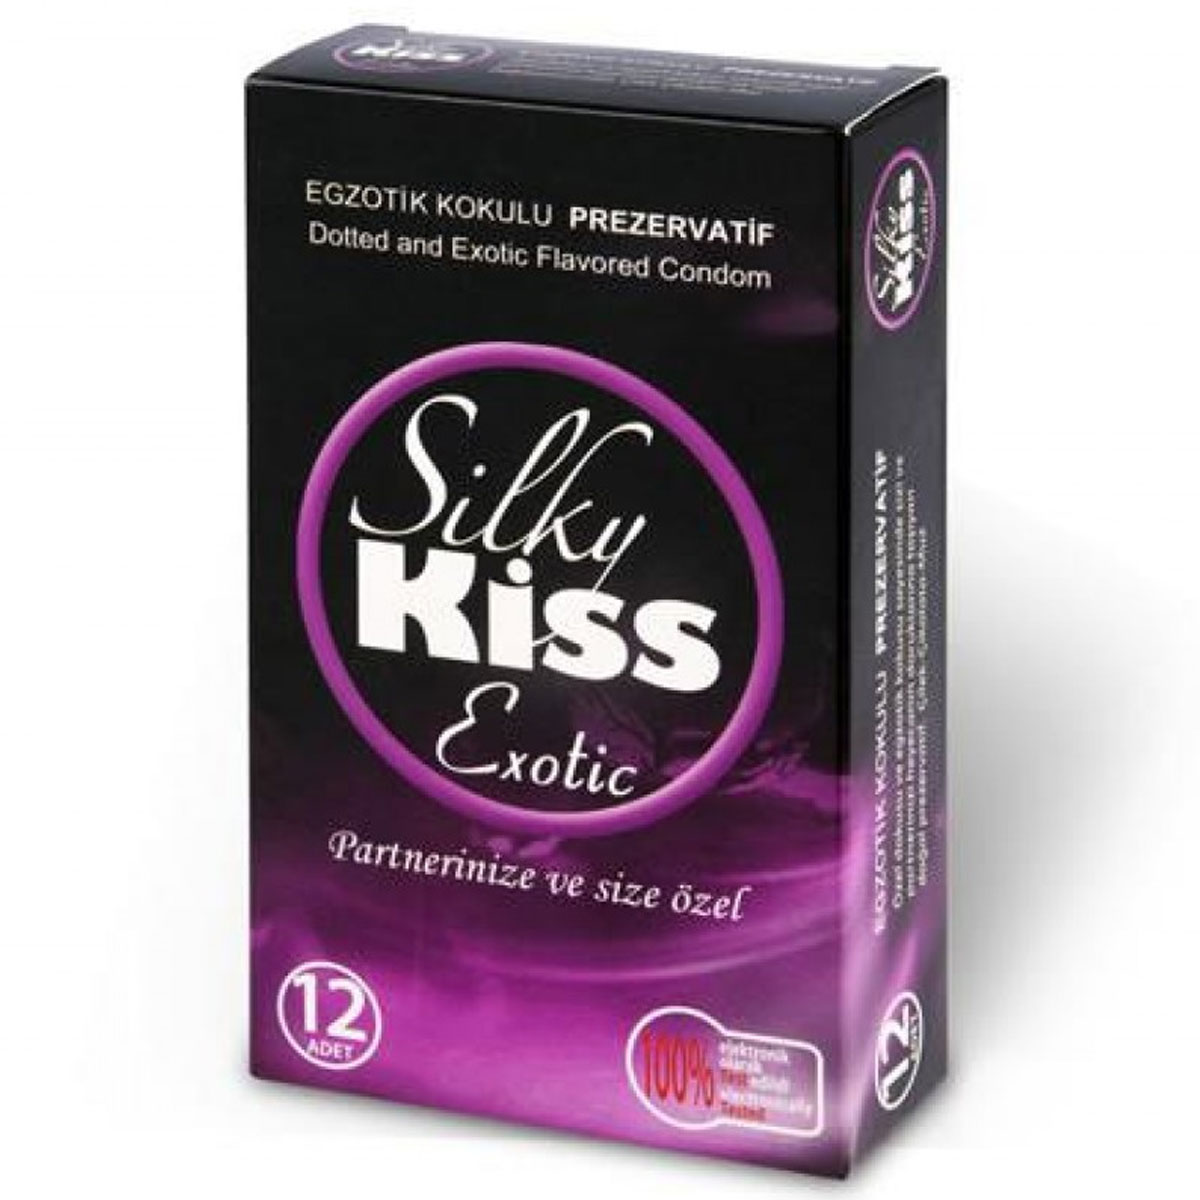 Silky Kiss Egzotik Kokulu Prezervatif C-1571